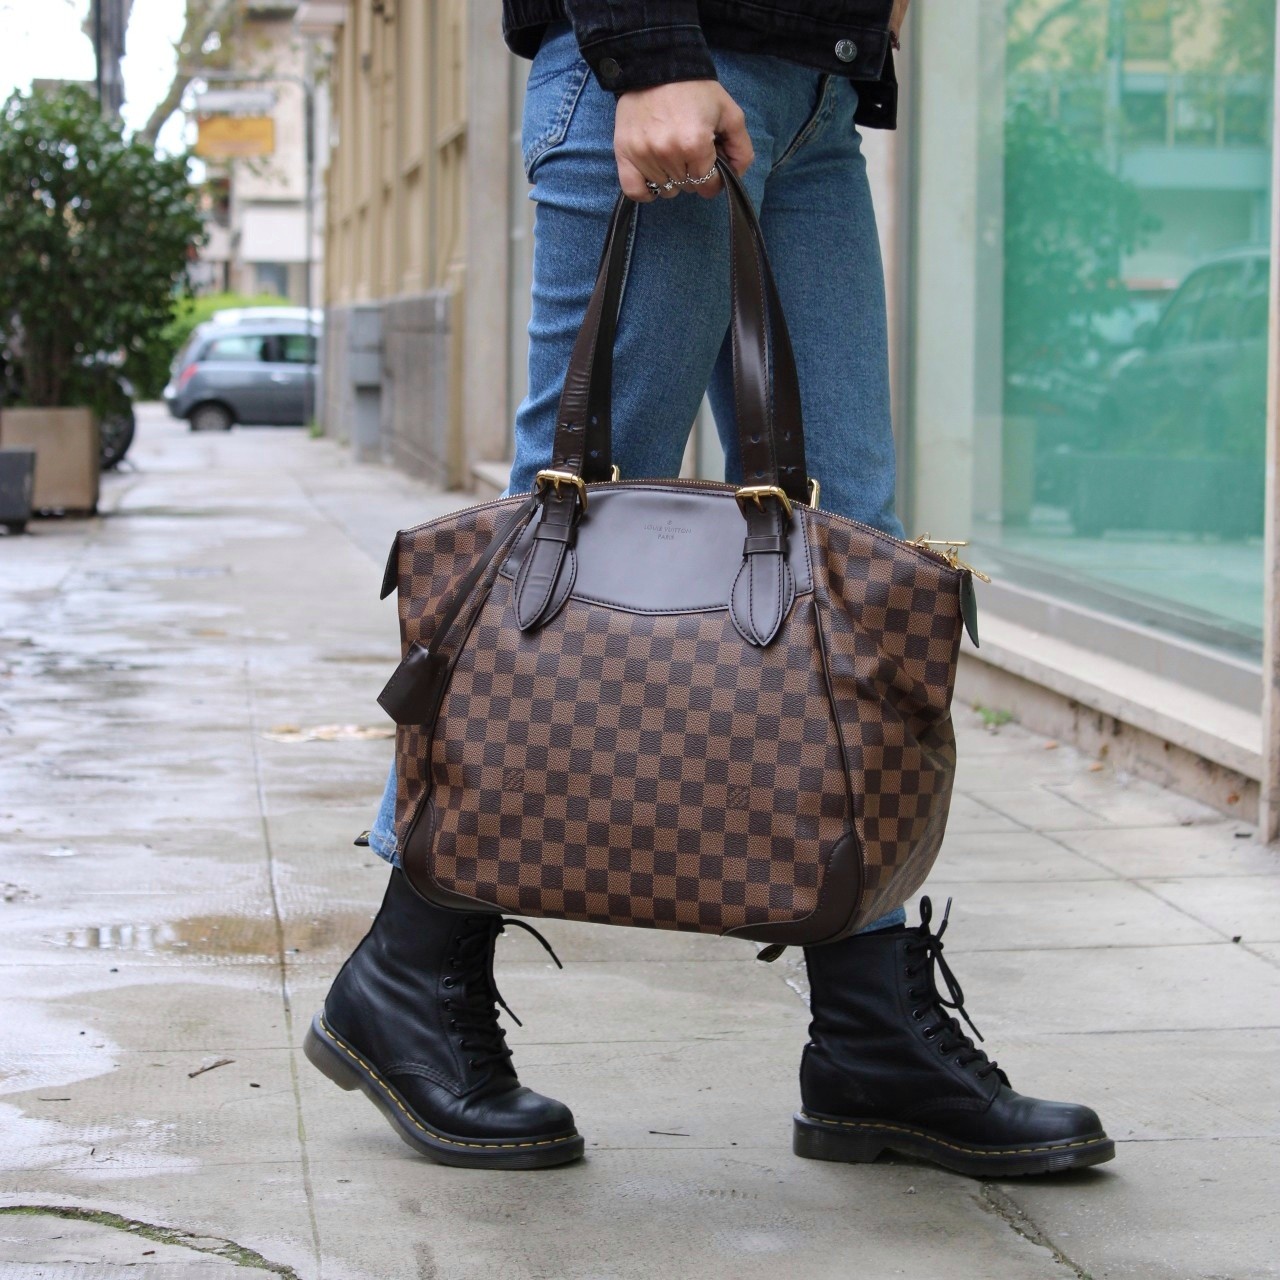 Louis Vuitton Verona PM Damier Ebene Canvas Handbag